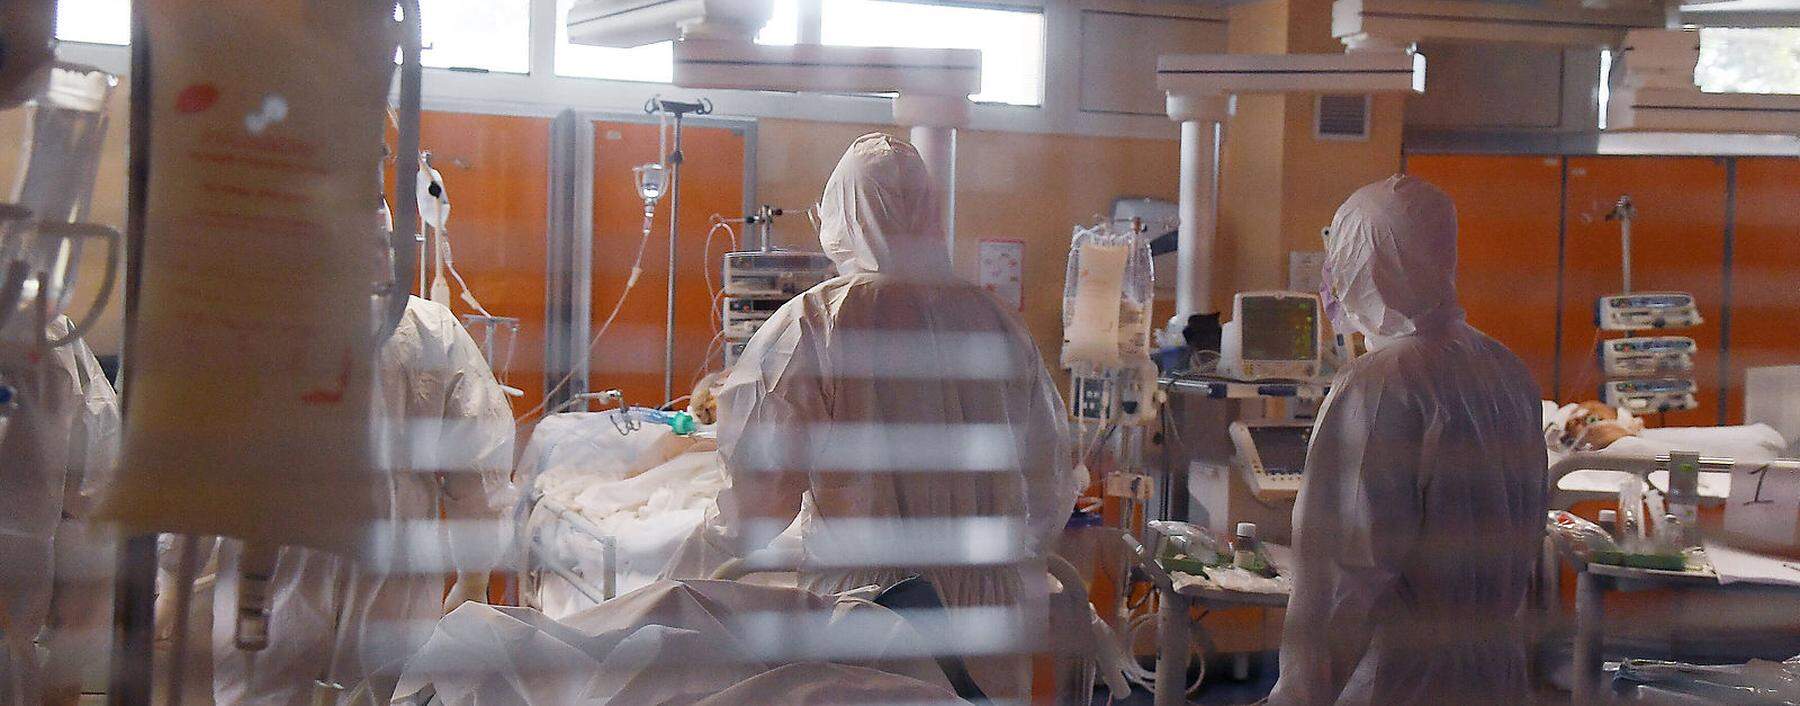 News Bilder des Tages Rom 25.03.2020 Corona Krise: Pressetermin in der Intensivstation des Casal Palocco Krankenhaus; I